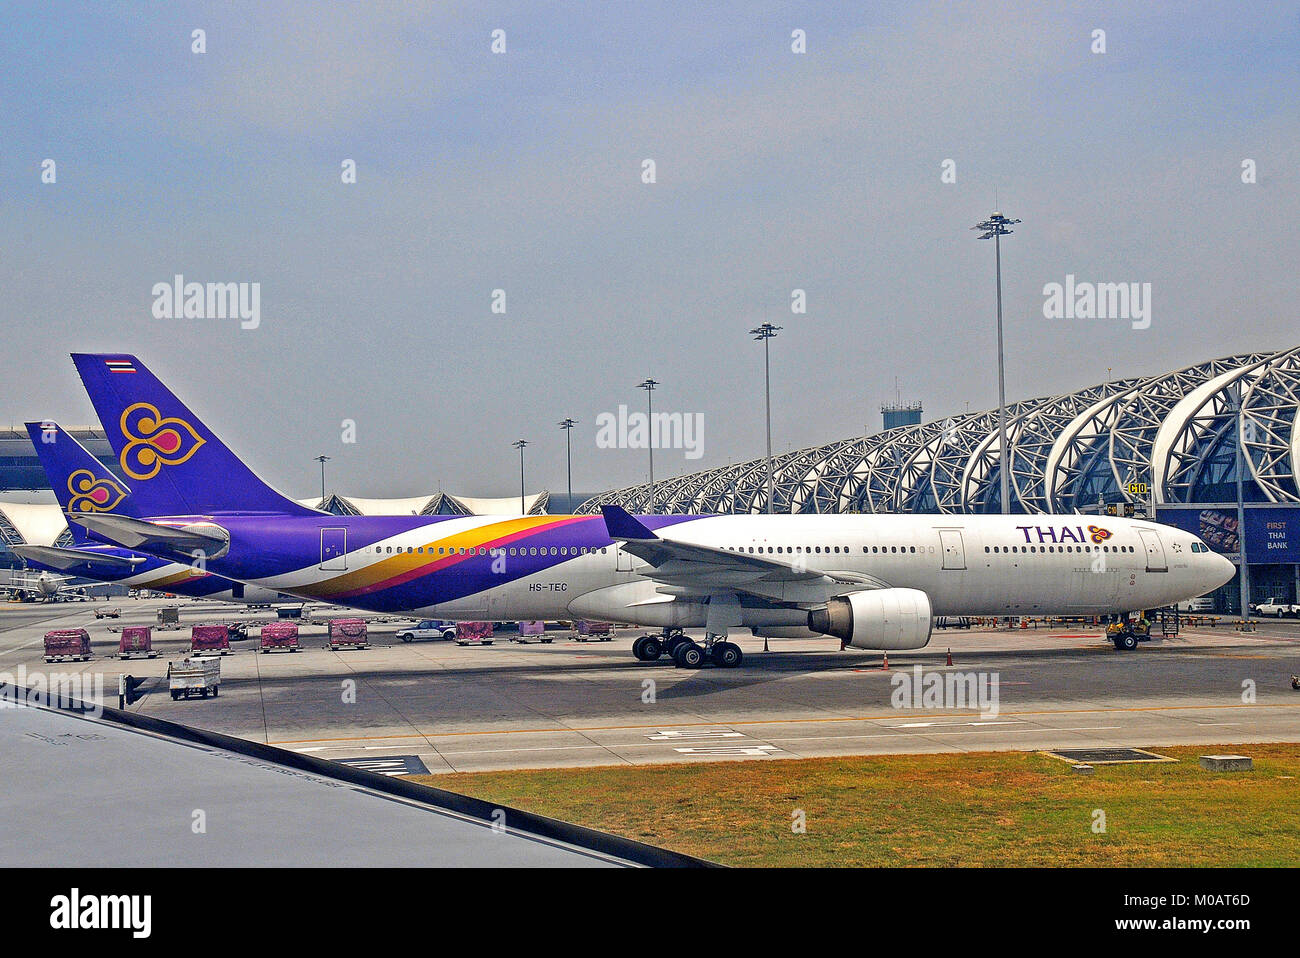 Aibus A 330-321 of Thai airways, Suvarnabhumi airport, Bangkok, Thailand Stock Photo